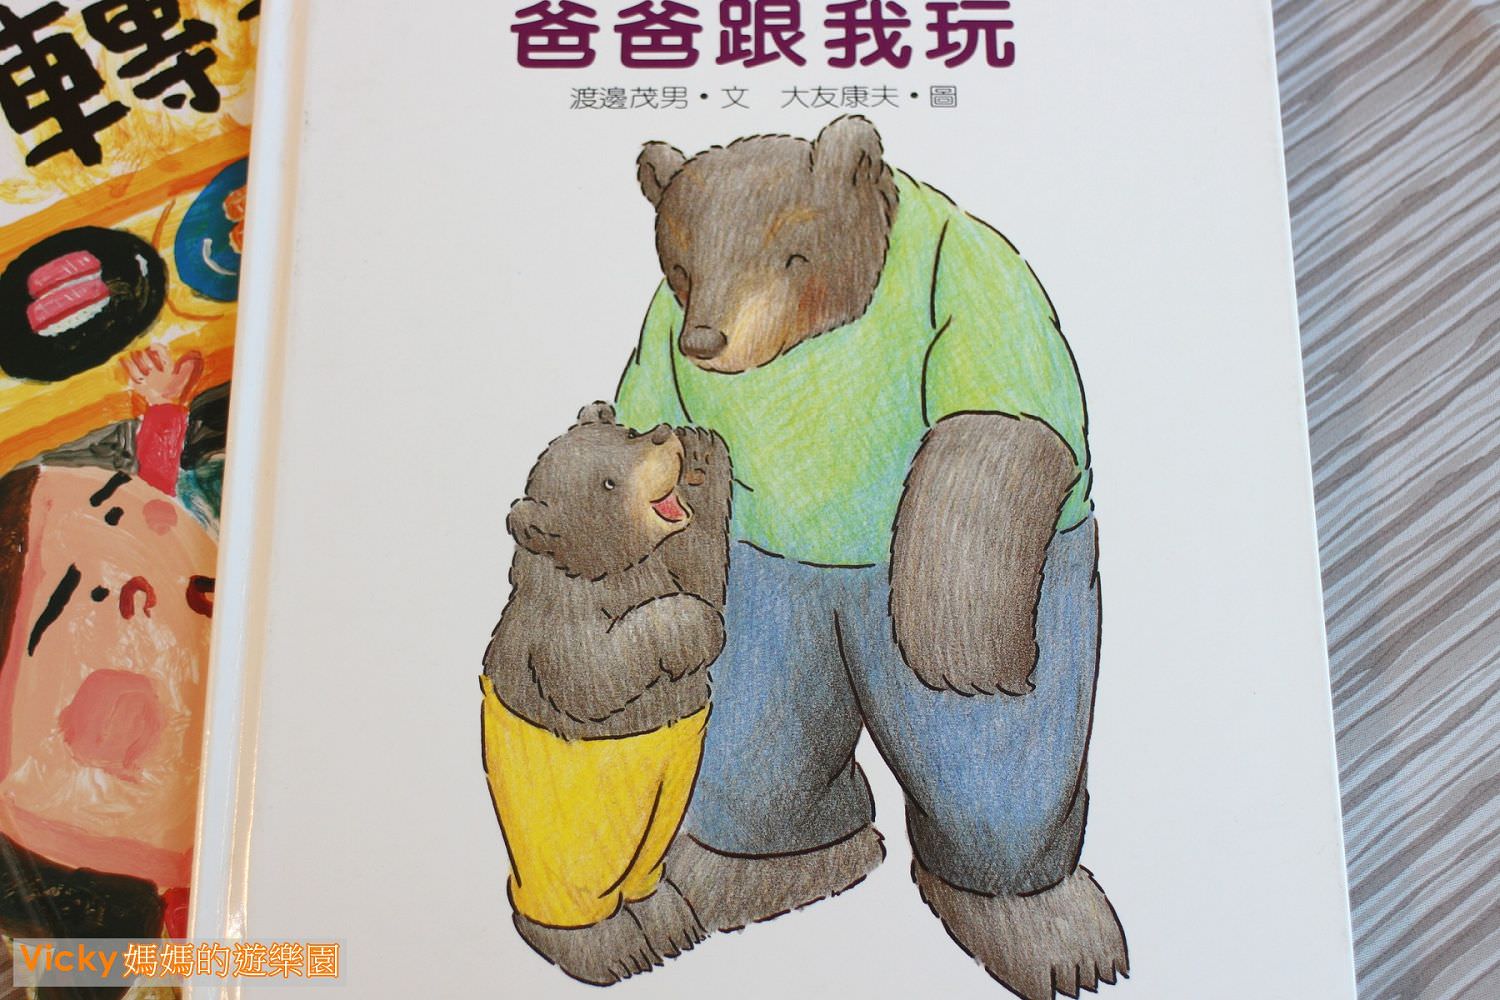 親子共讀︱0-3歲繪本︱九大分類：溫馨啟蒙書，從小培養孩子閱讀習慣、專注力︱謝謝你來當我的寶貝︱媽媽，買綠豆︱爸爸跟我玩（1）